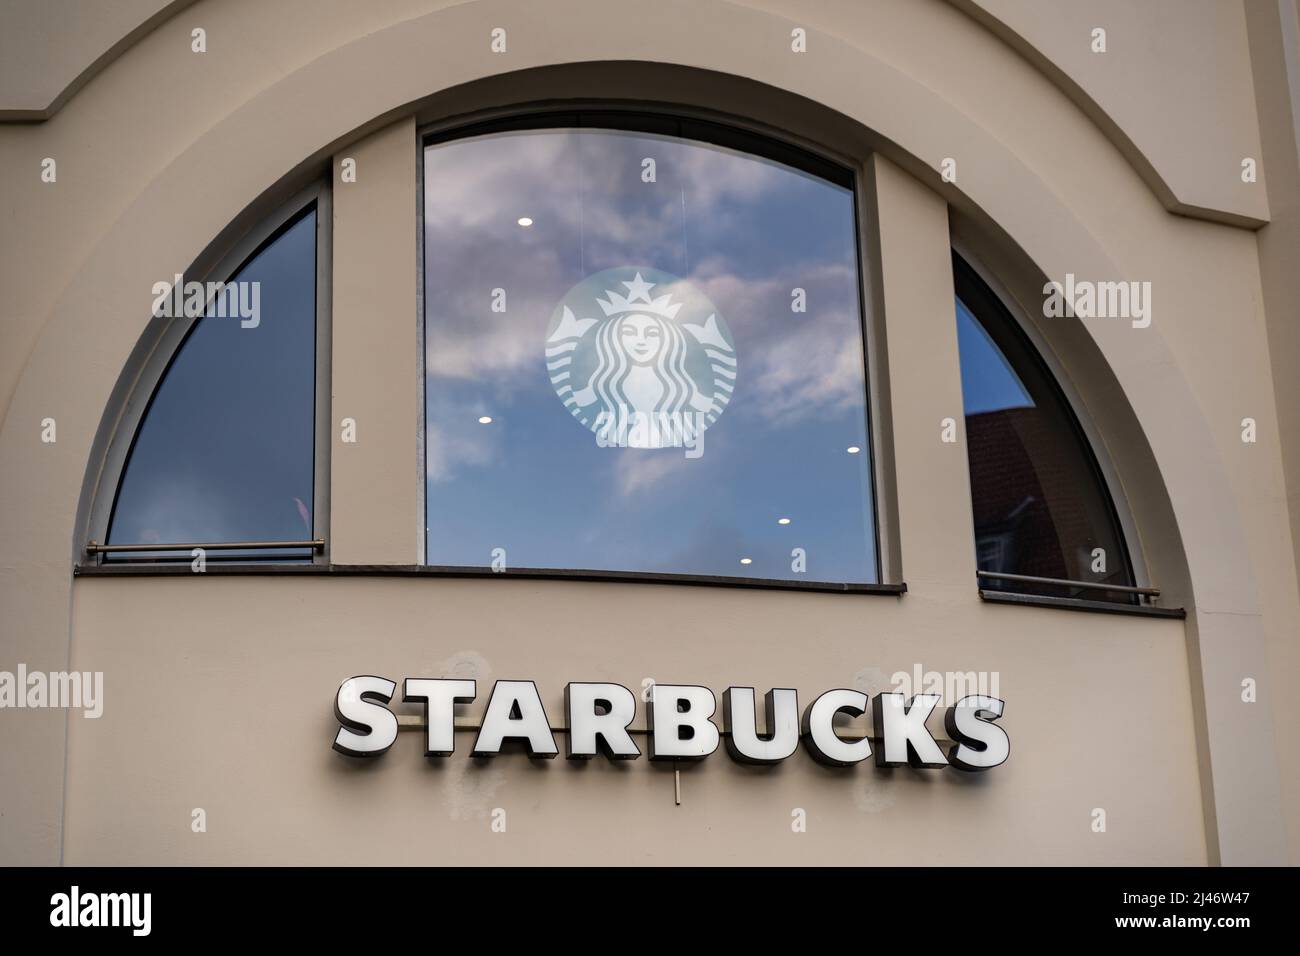 Les lettres Starbucks et le logo font partie de la façade d'un bâtiment de la ville. Publicité pour la célèbre compagnie de café qui gère une franchise Banque D'Images